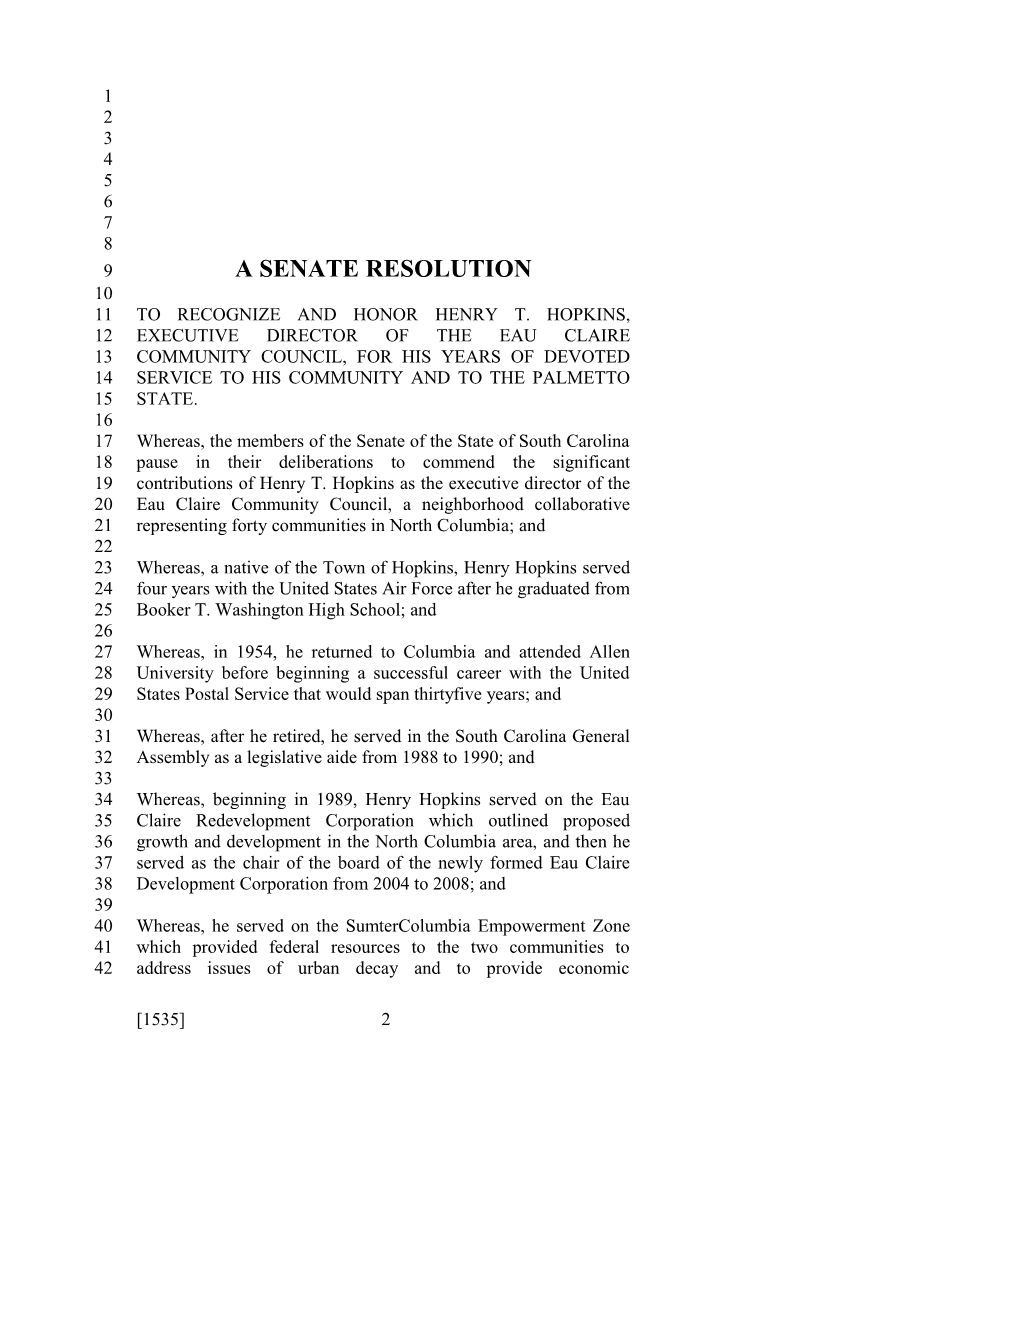 2011-2012 Bill 1535: Henry T. Hopkins - South Carolina Legislature Online